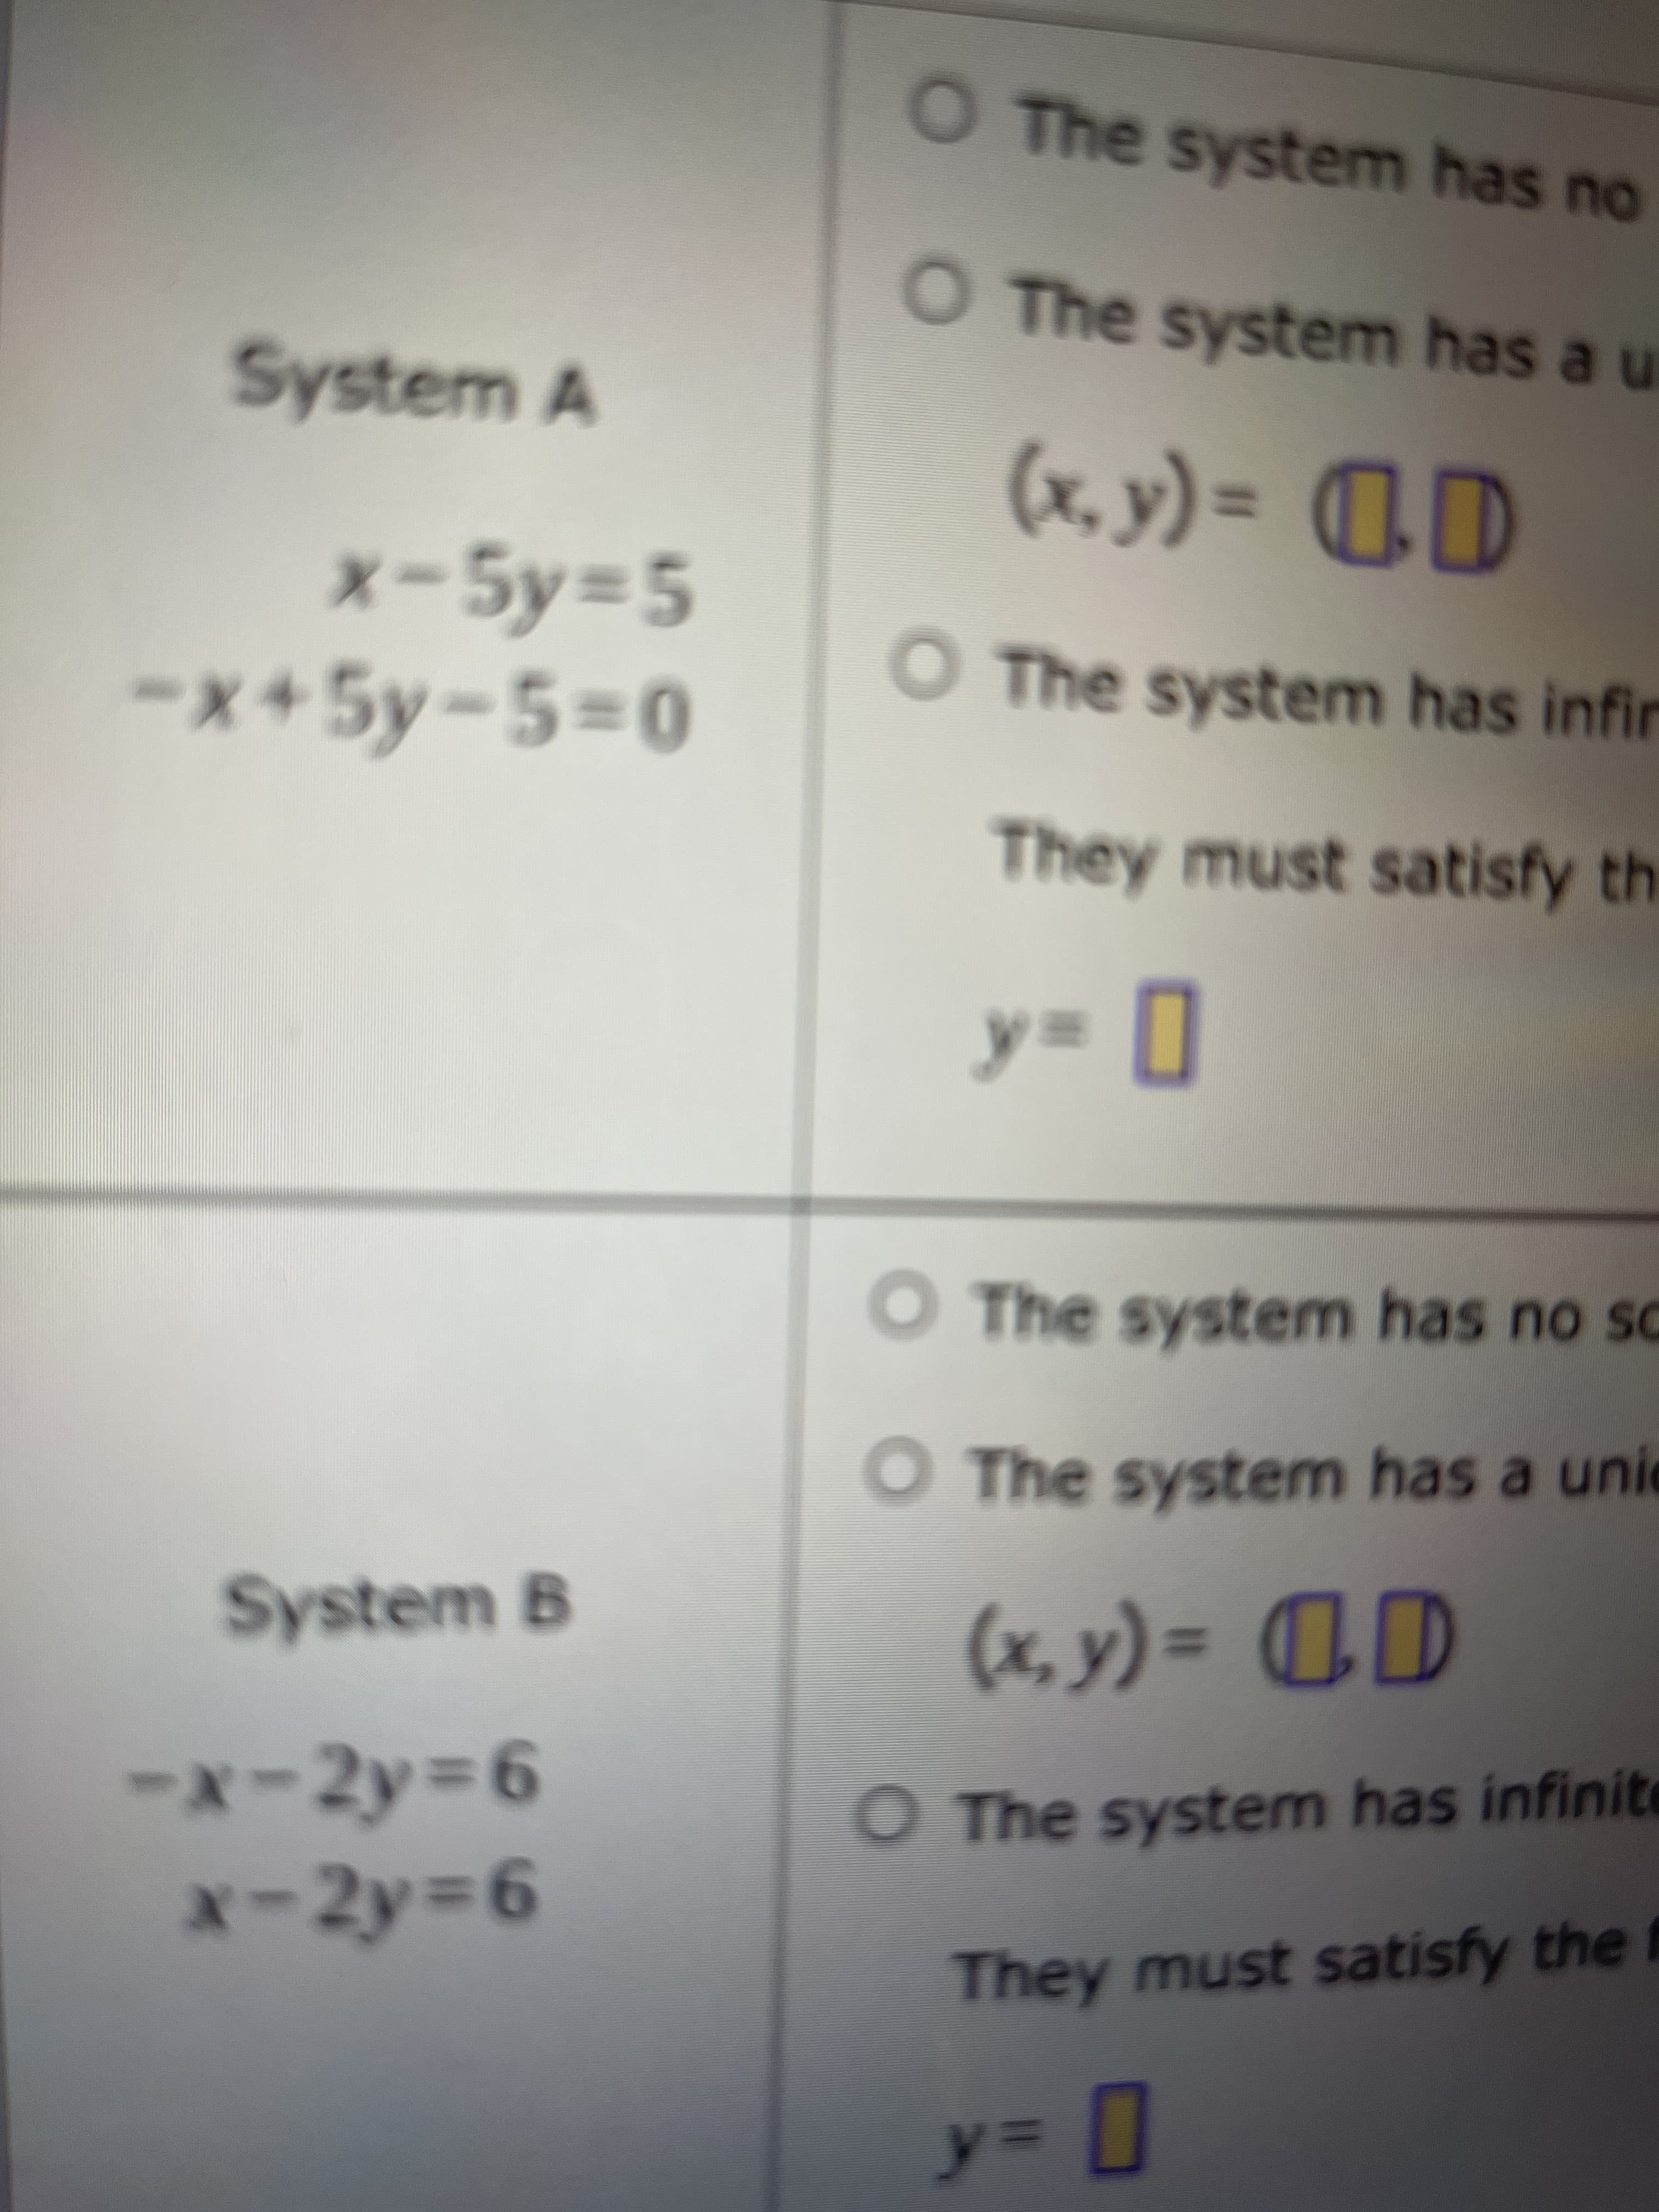 O The system has no
O The system has a u
System A
x-5y=5
x+5y-5%3D0
CD = (^*x)
O The system has infir
They must satisfy th
O The system has no so
O The system has a unie
System B
(x, y) =
%3D
93=
-x-2y% D6
O The system has infinite
x-2y% D6
93=
They must satisfy the f
3D
